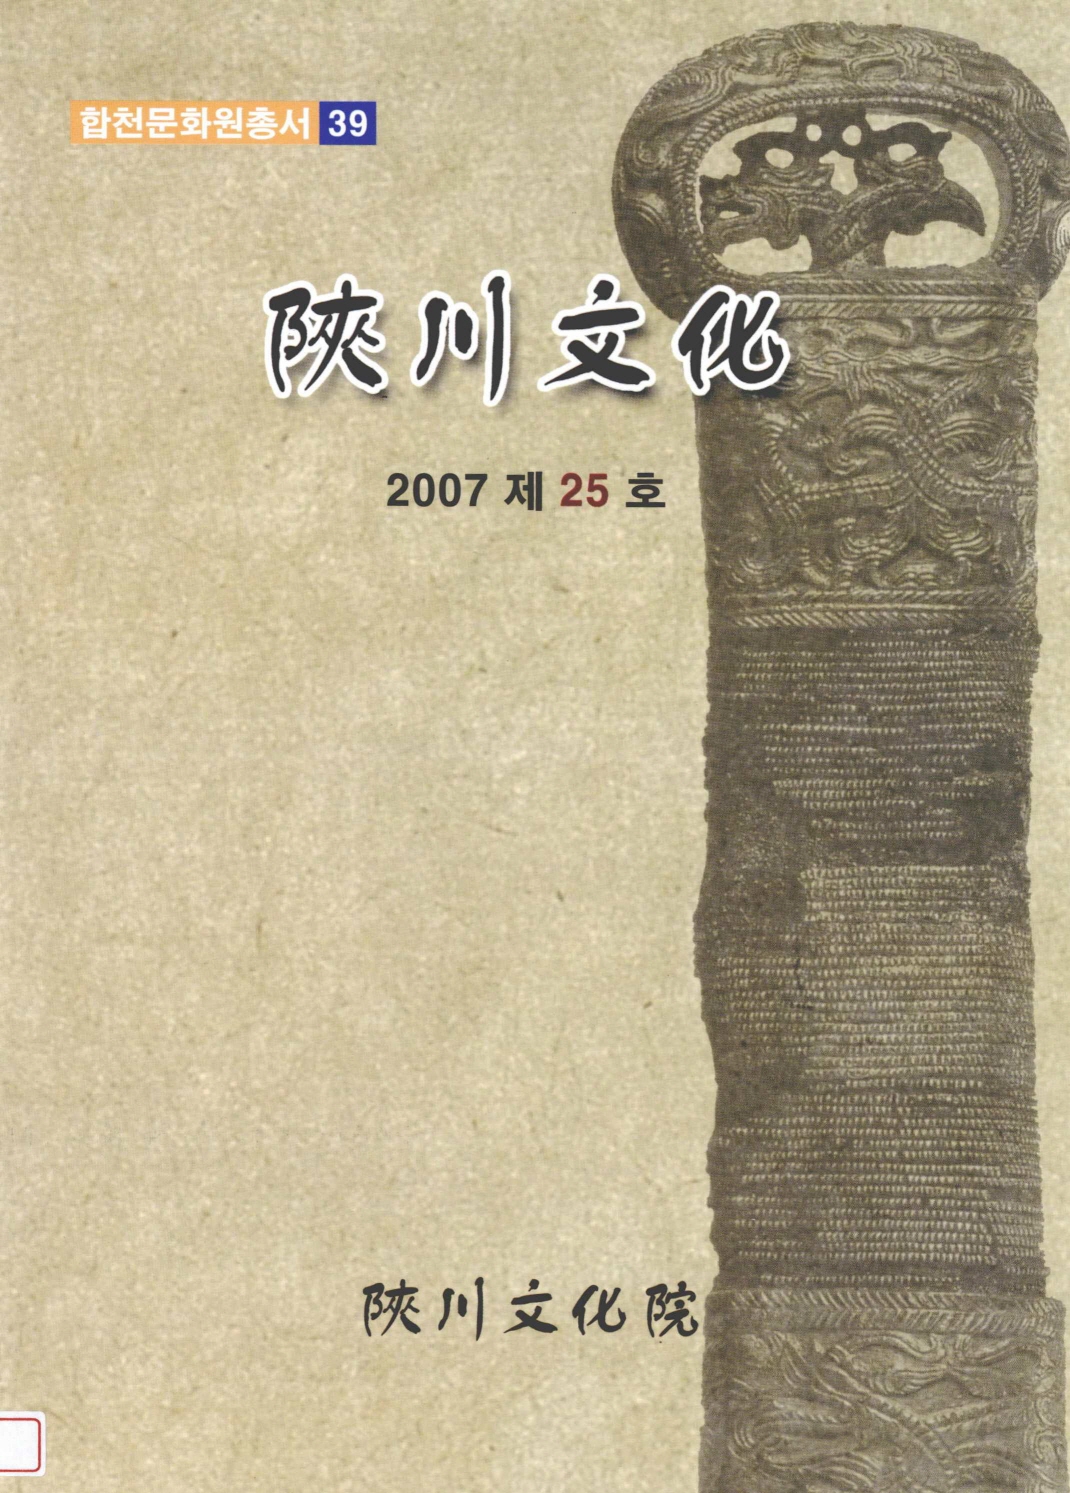 陜川文化院叢書 39號 합천문화 2007 제25호